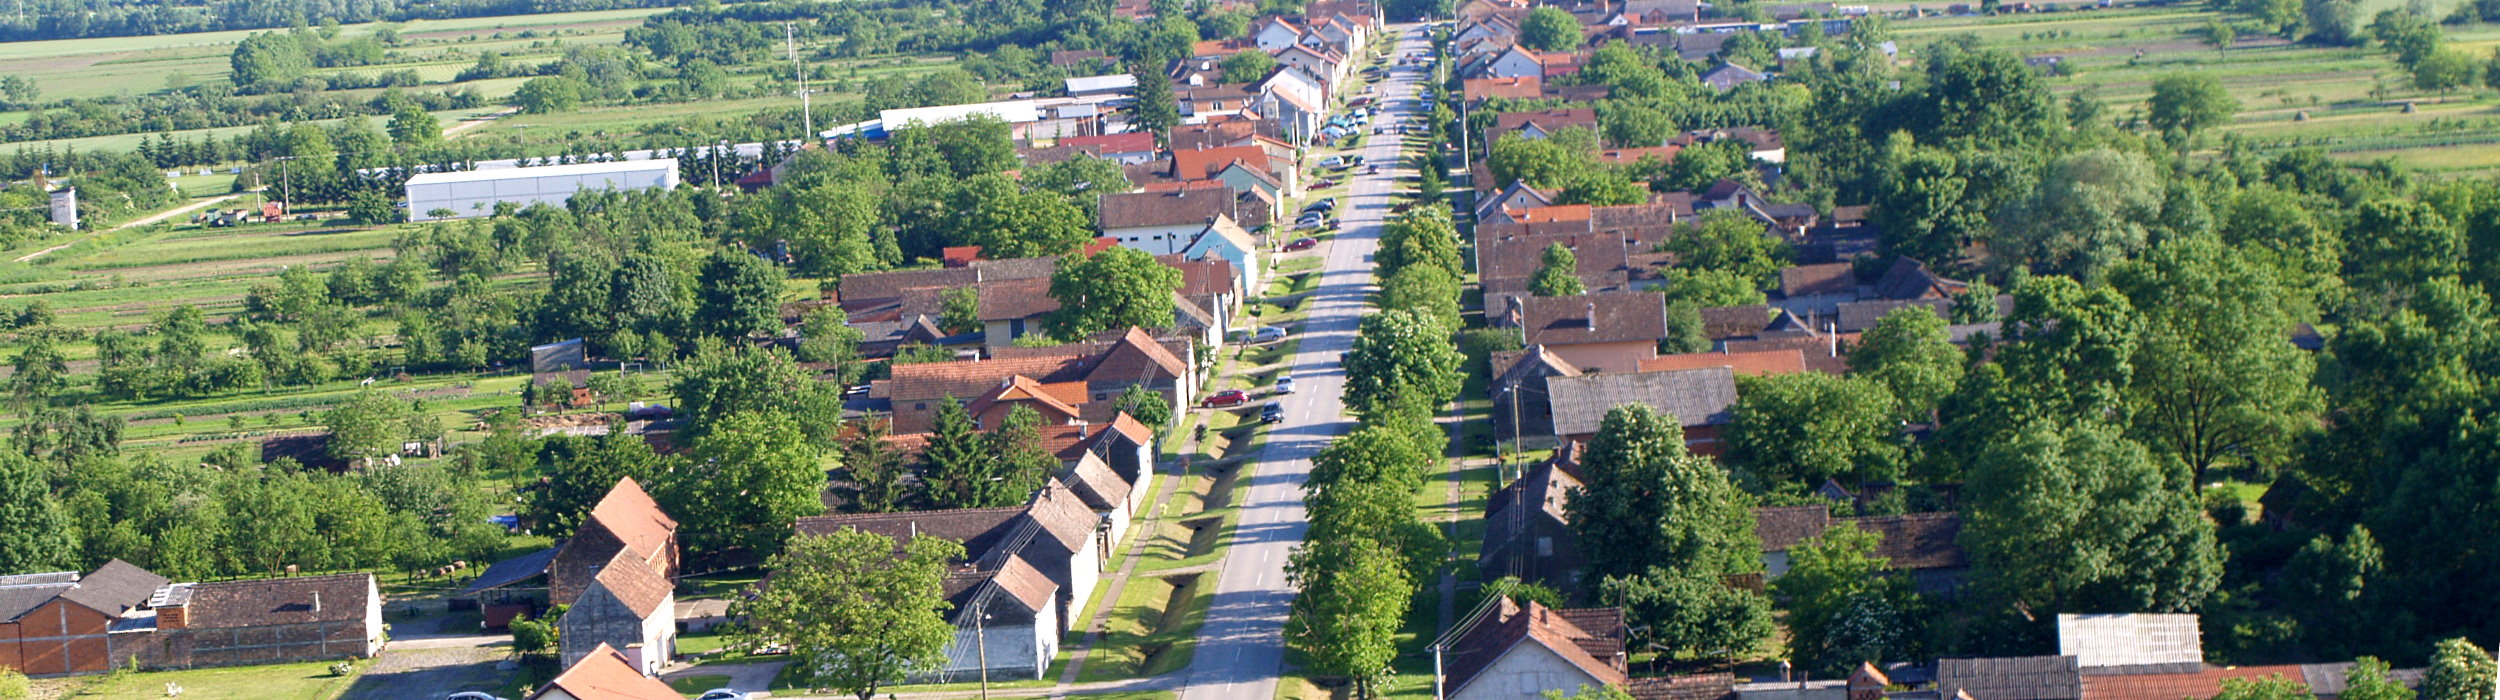 Naselje Bicko Selo iz zraka